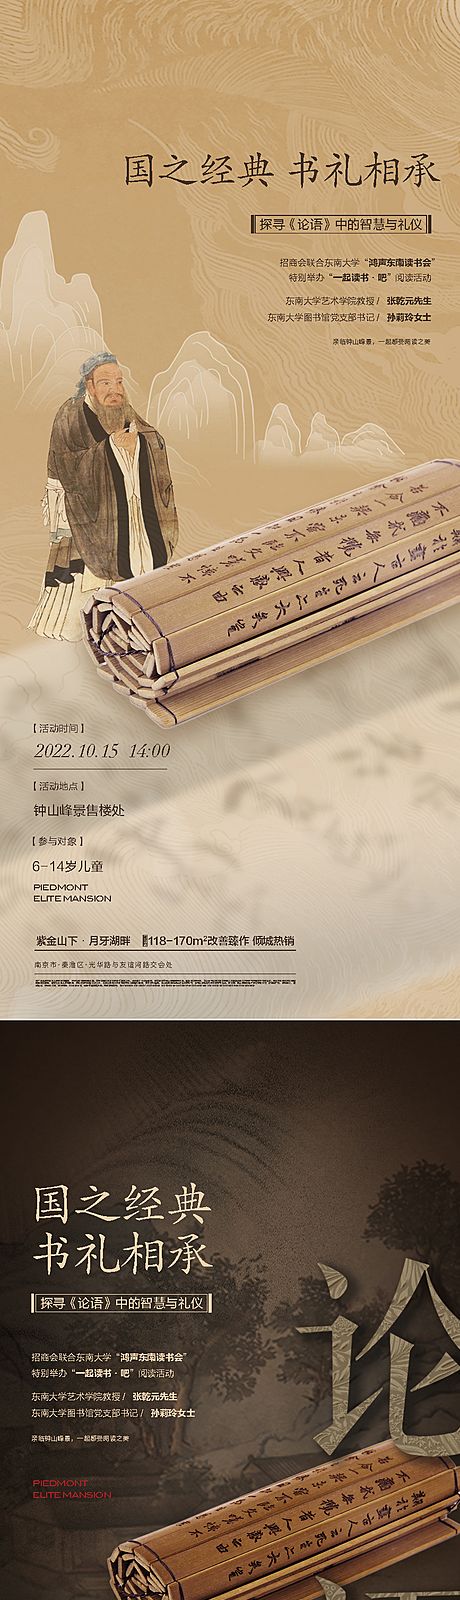 仙图网-论语读书古代中国风活动海报